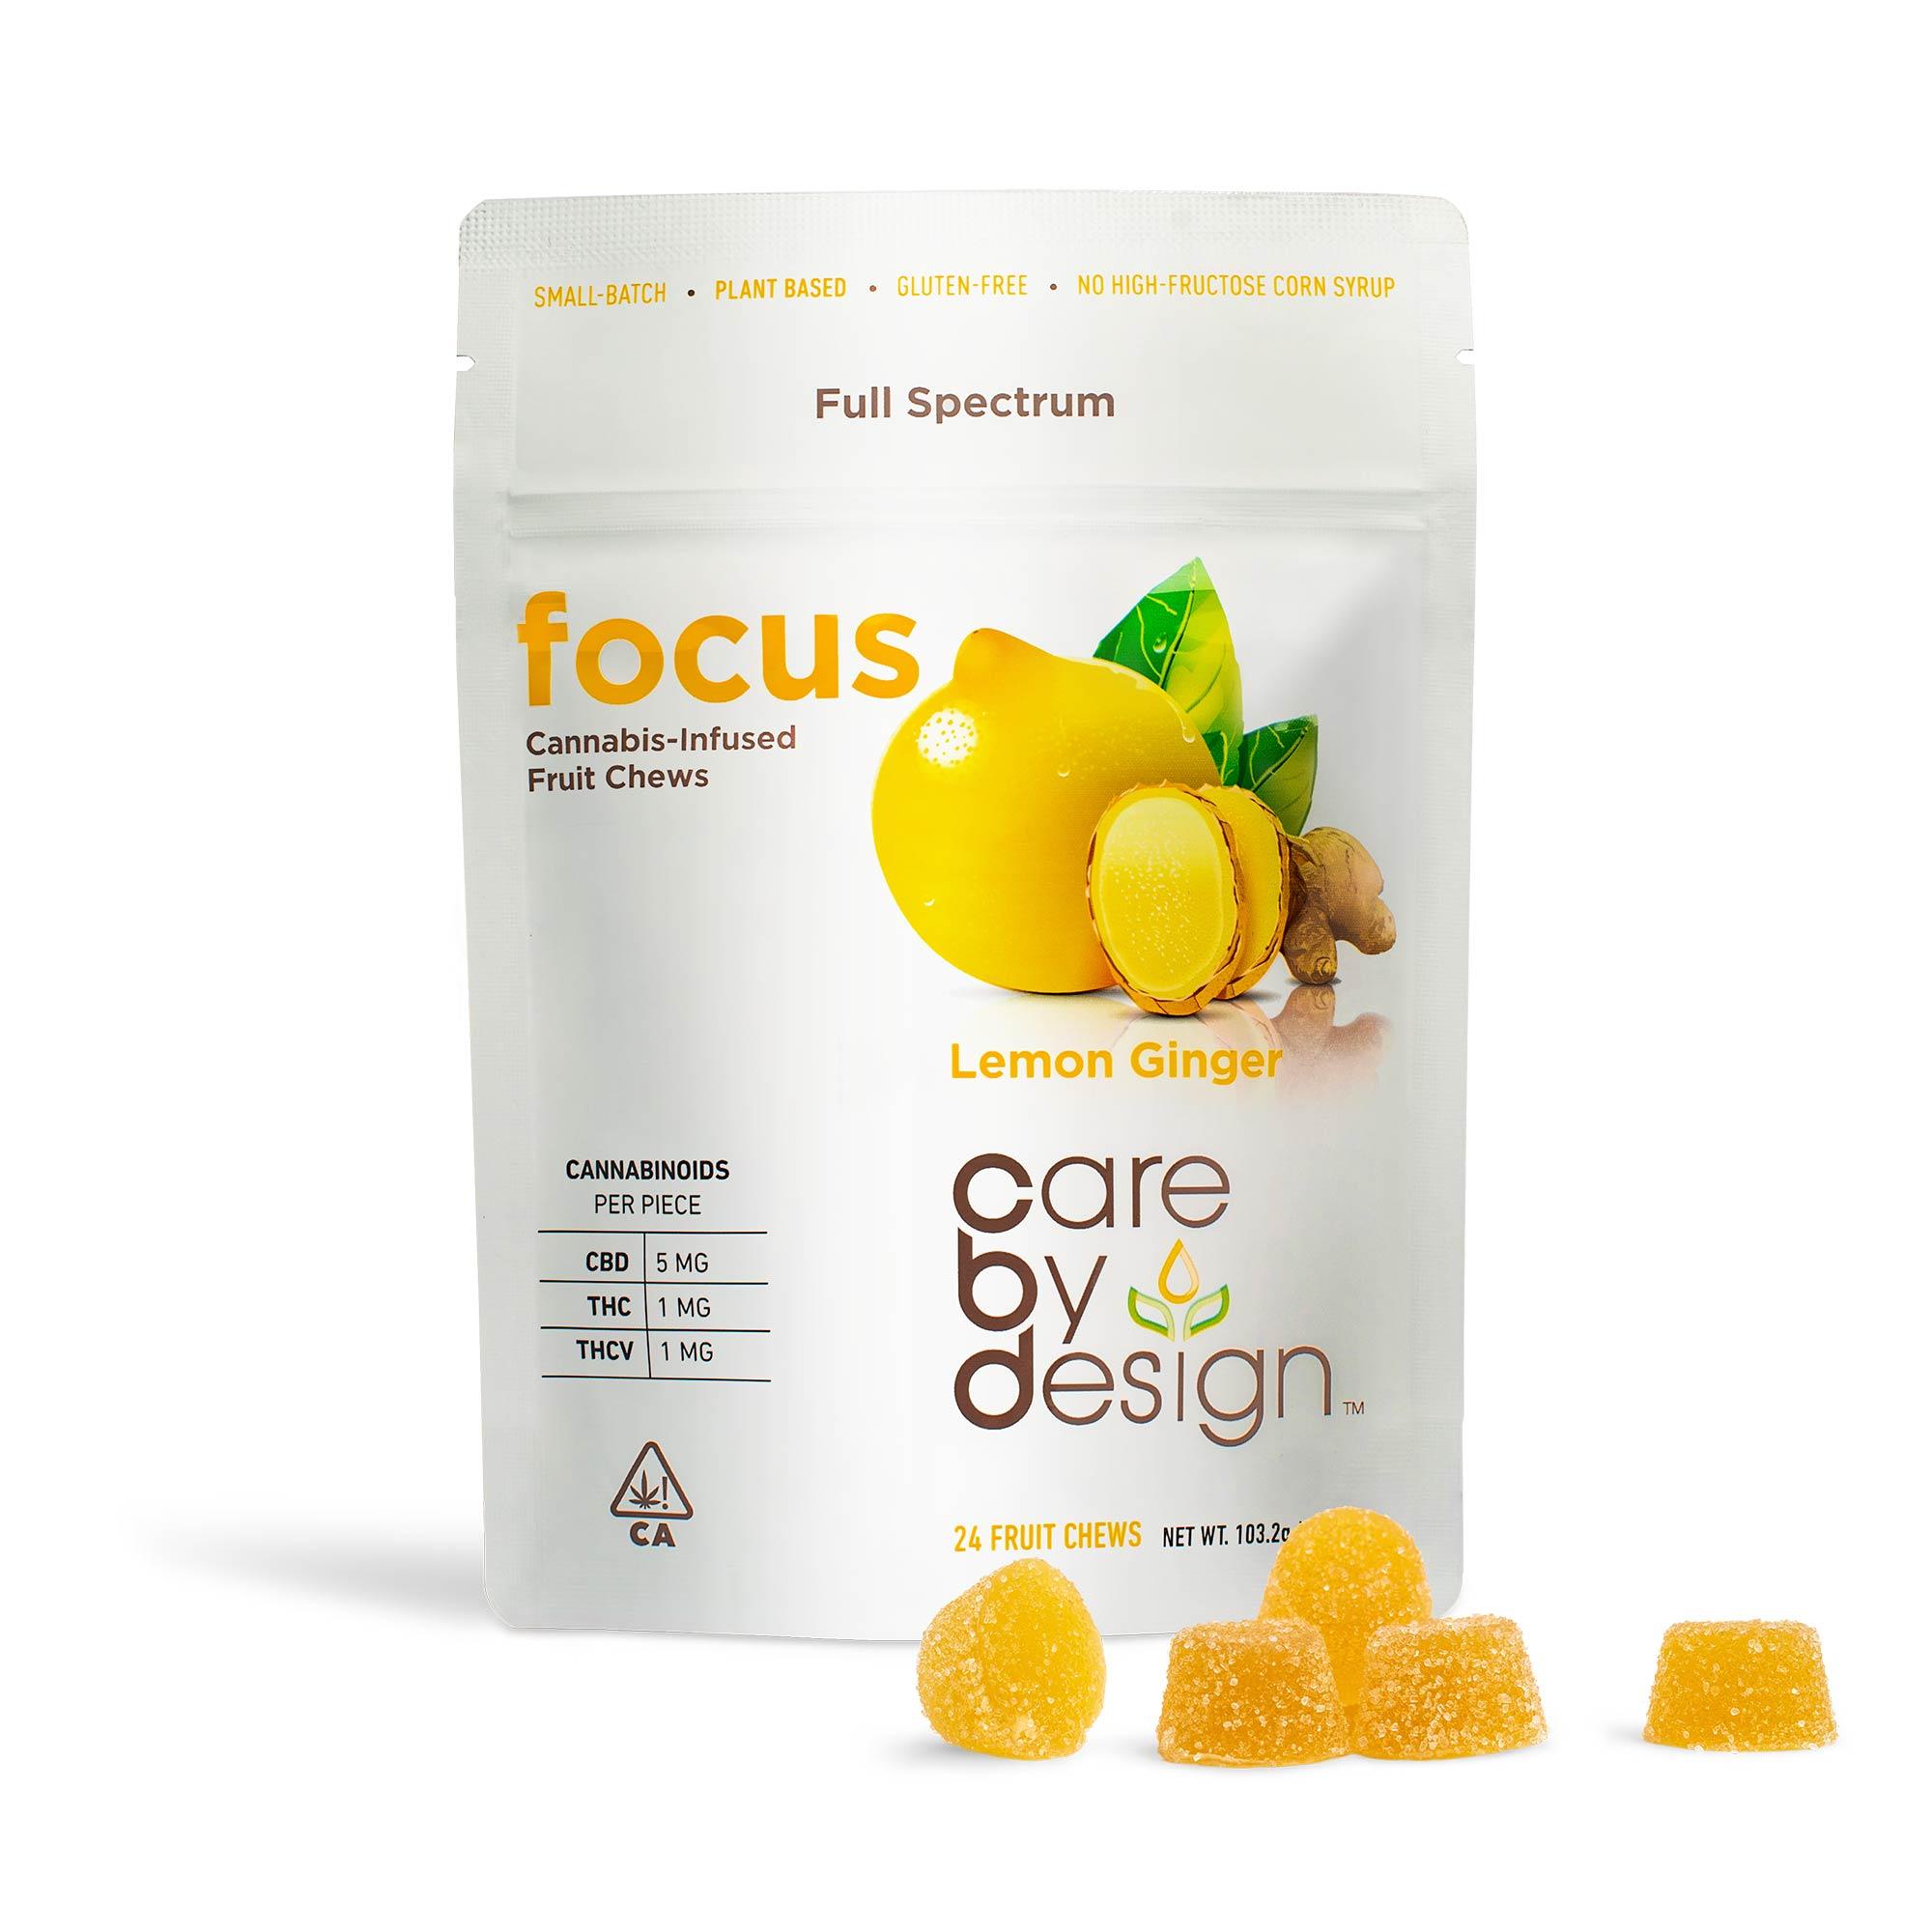 Lemon Ginger "Focus" Gummies